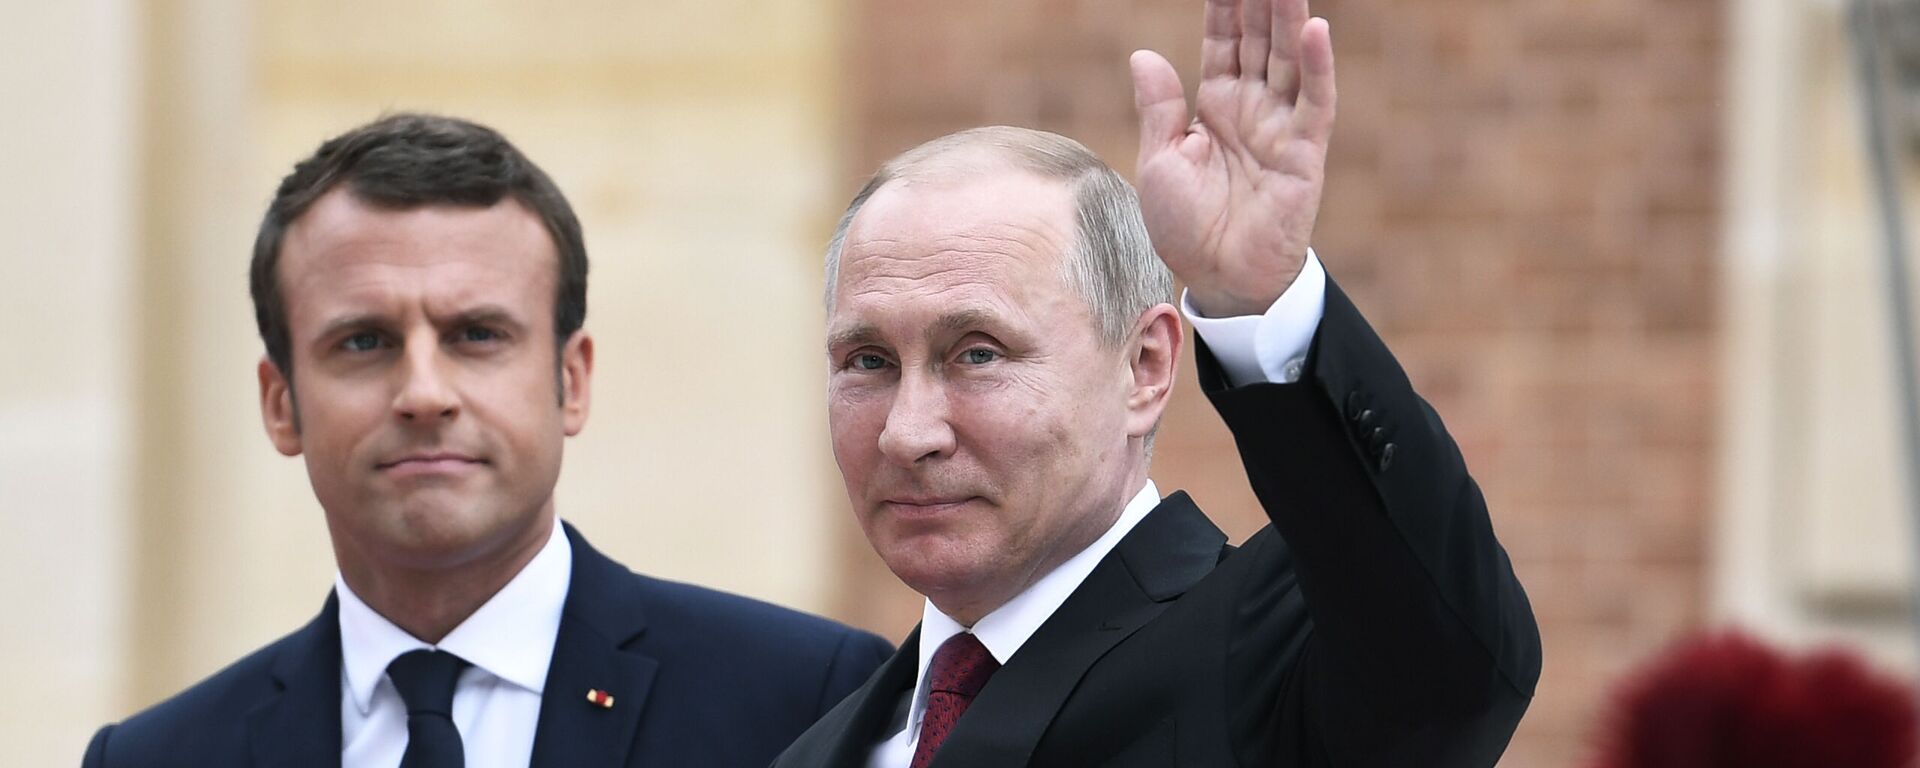 cuộc gặp sắp tới của các ông Vladimir Putin và Emmanuel Macron - Sputnik Việt Nam, 1920, 20.09.2021